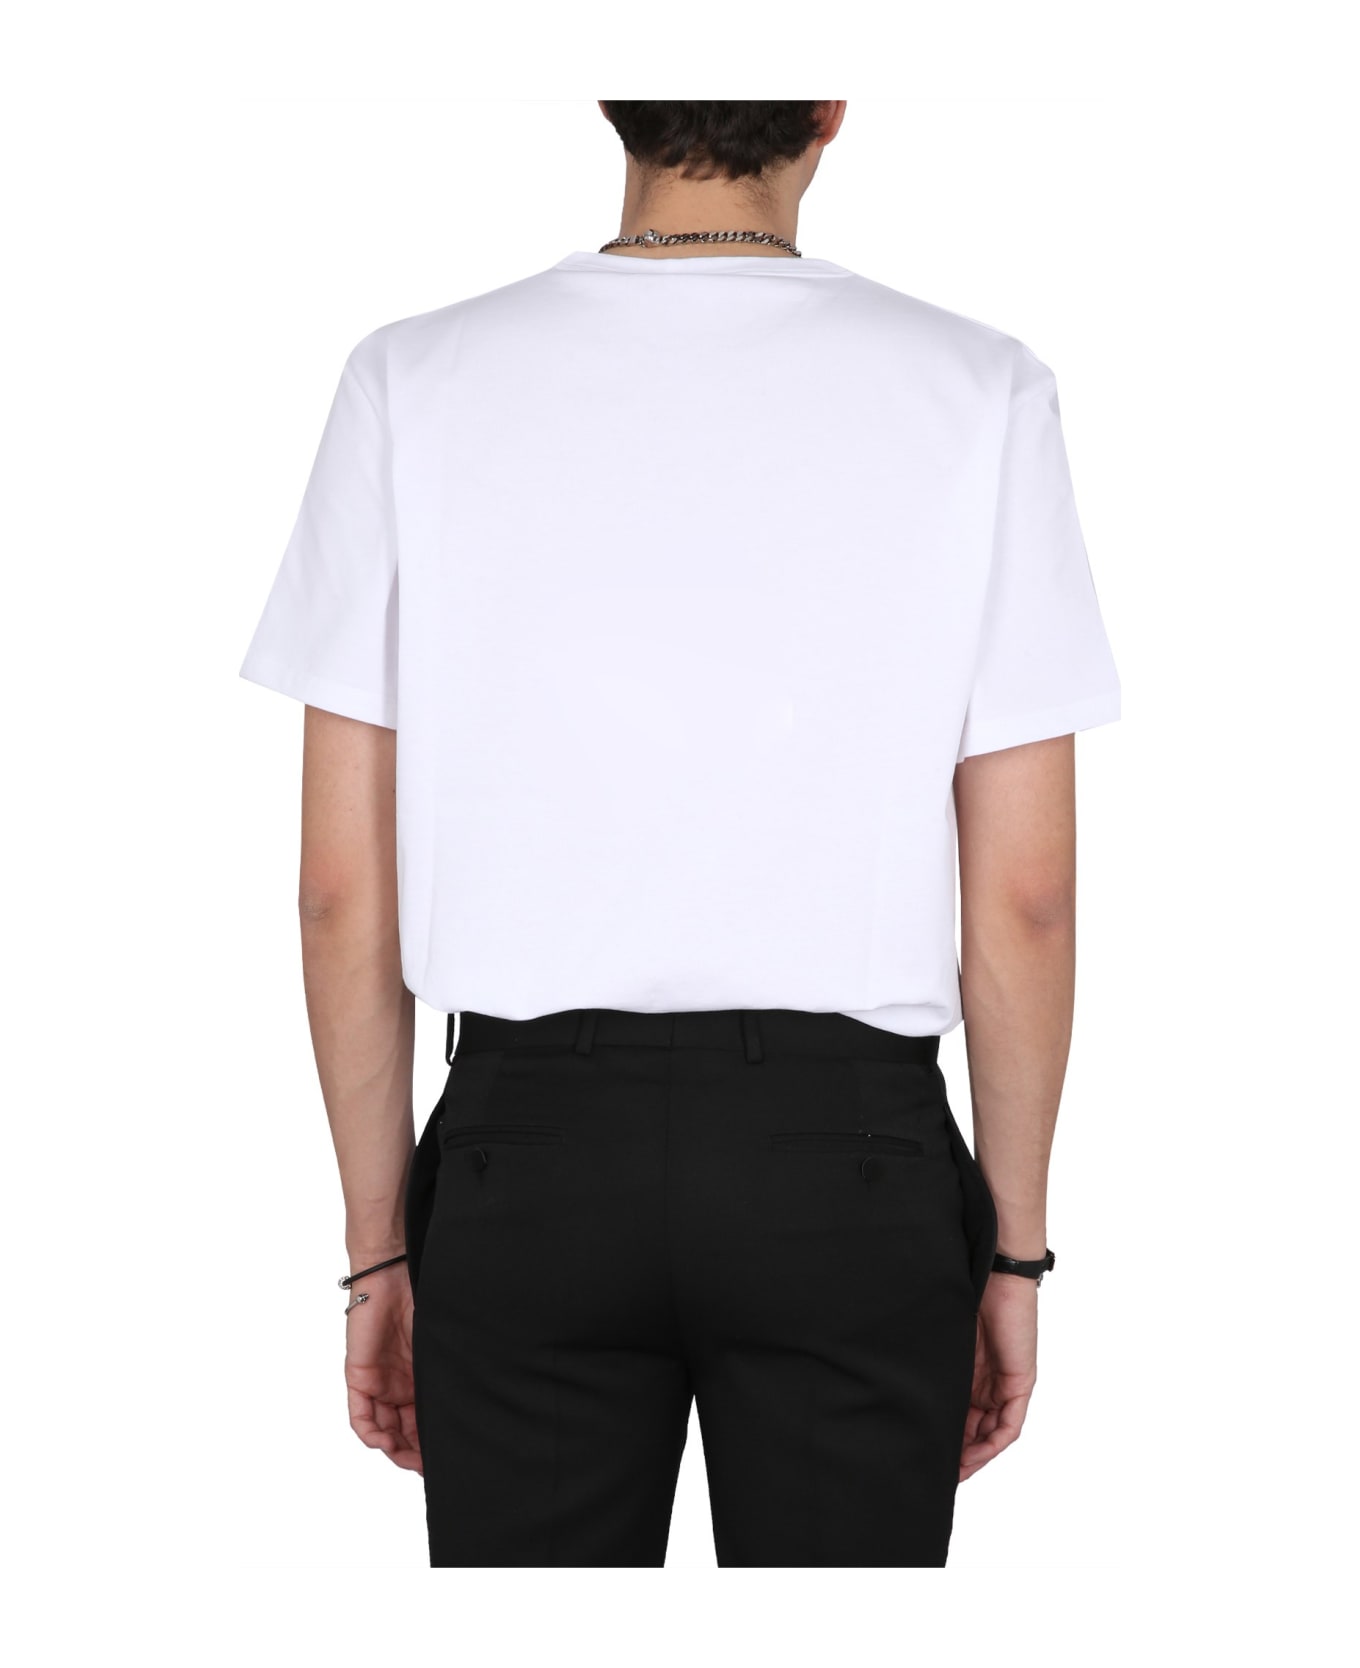 Alexander McQueen T-shirt - Bianco